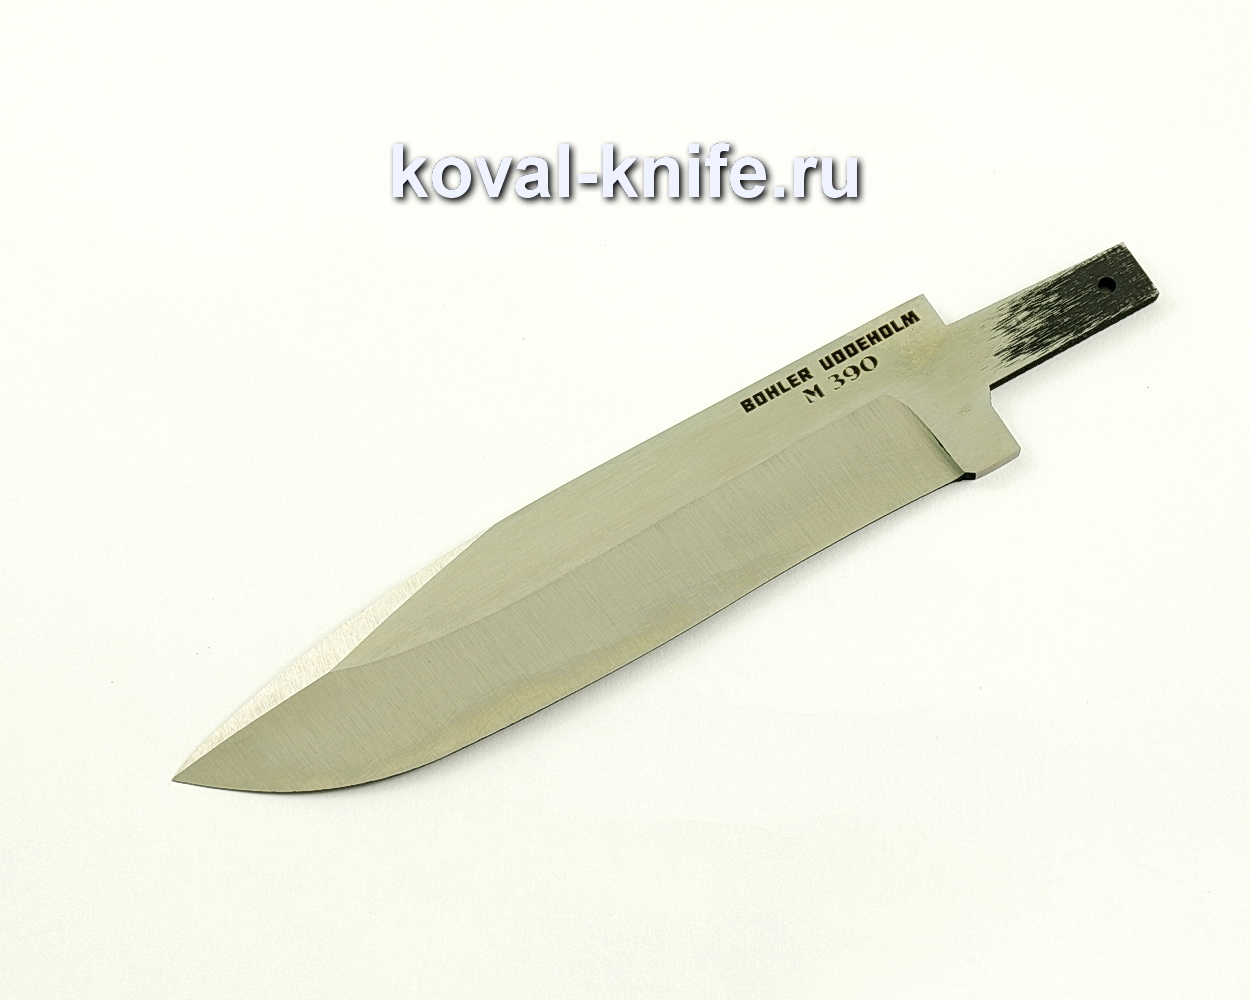 Клинок для ножа из порошковой стали M390 Олимп